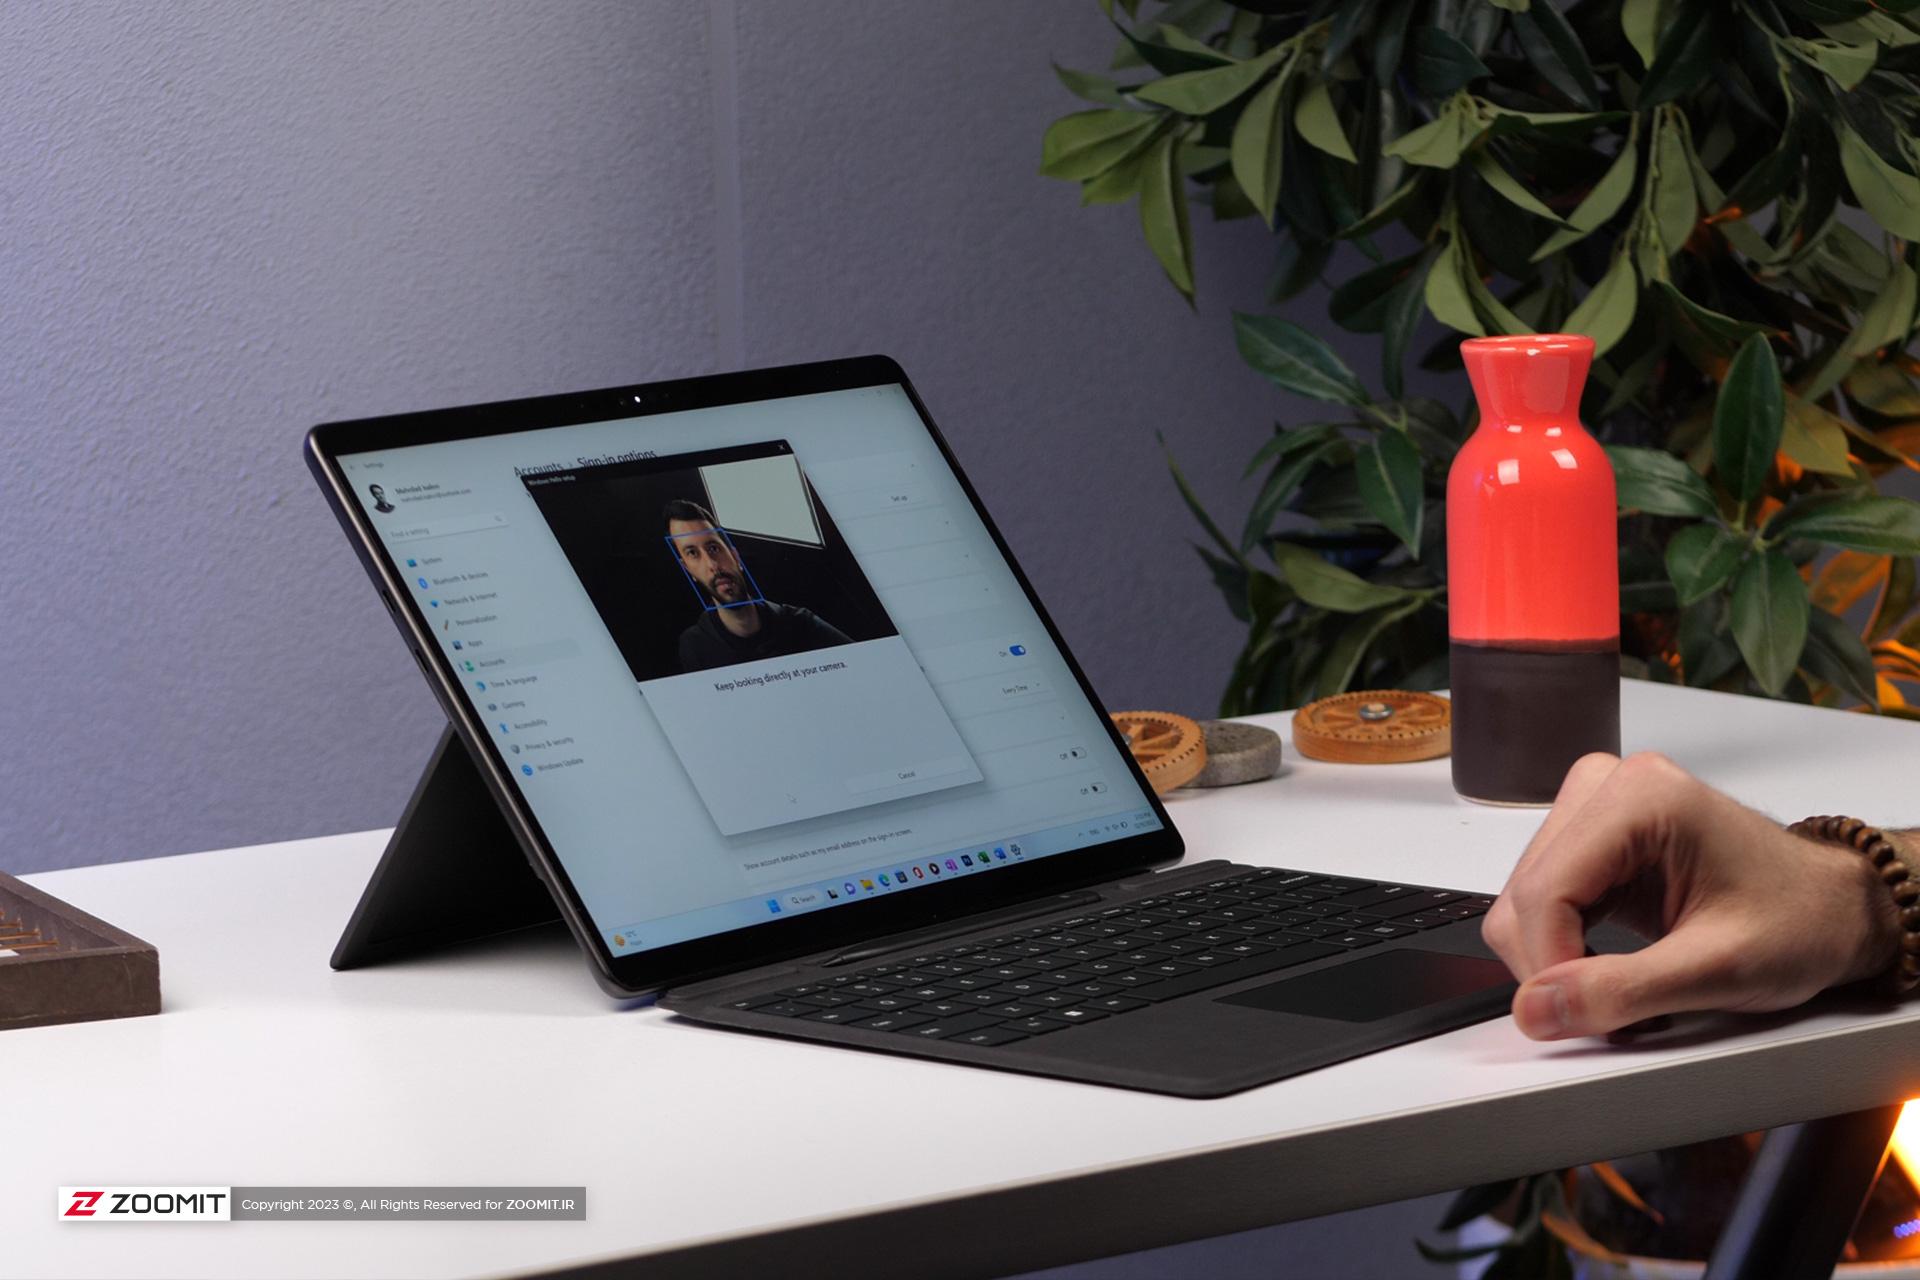 ویندوز هلو لپ تاپ سرفیس پرو 9 مایکروسافت / Microsoft Surface Pro 9